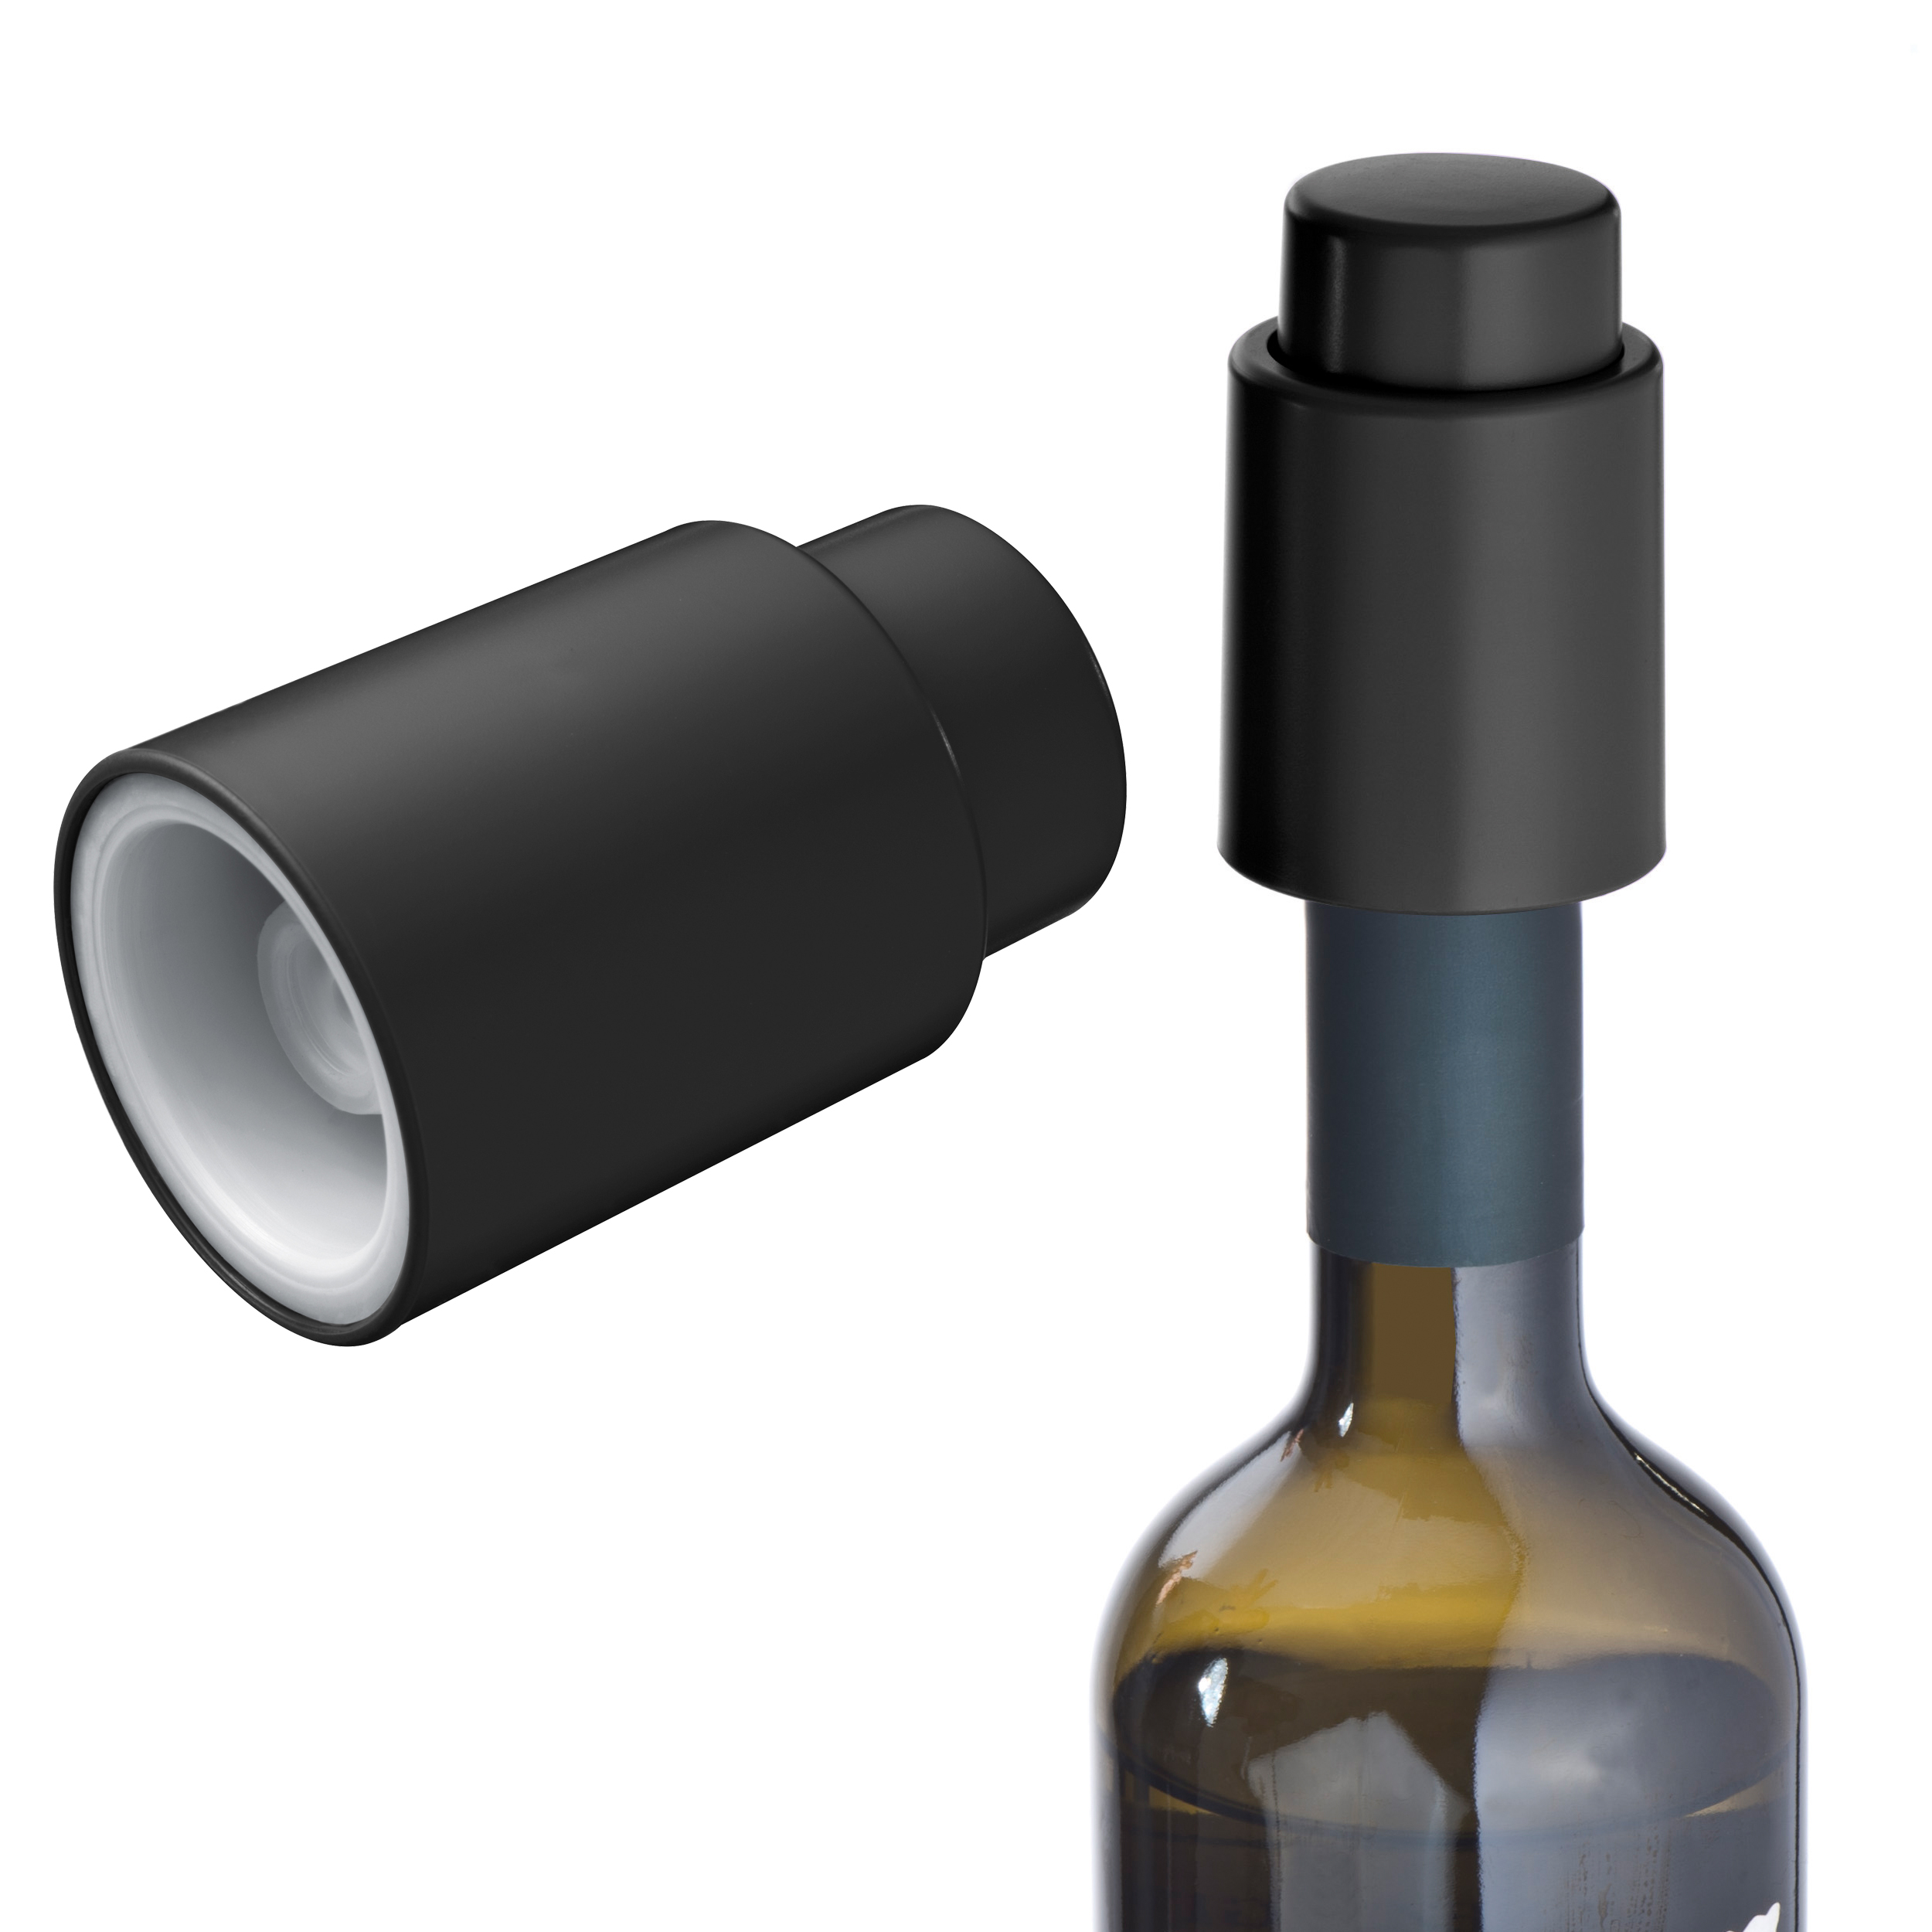 Vacuum wine stopper made of plastic